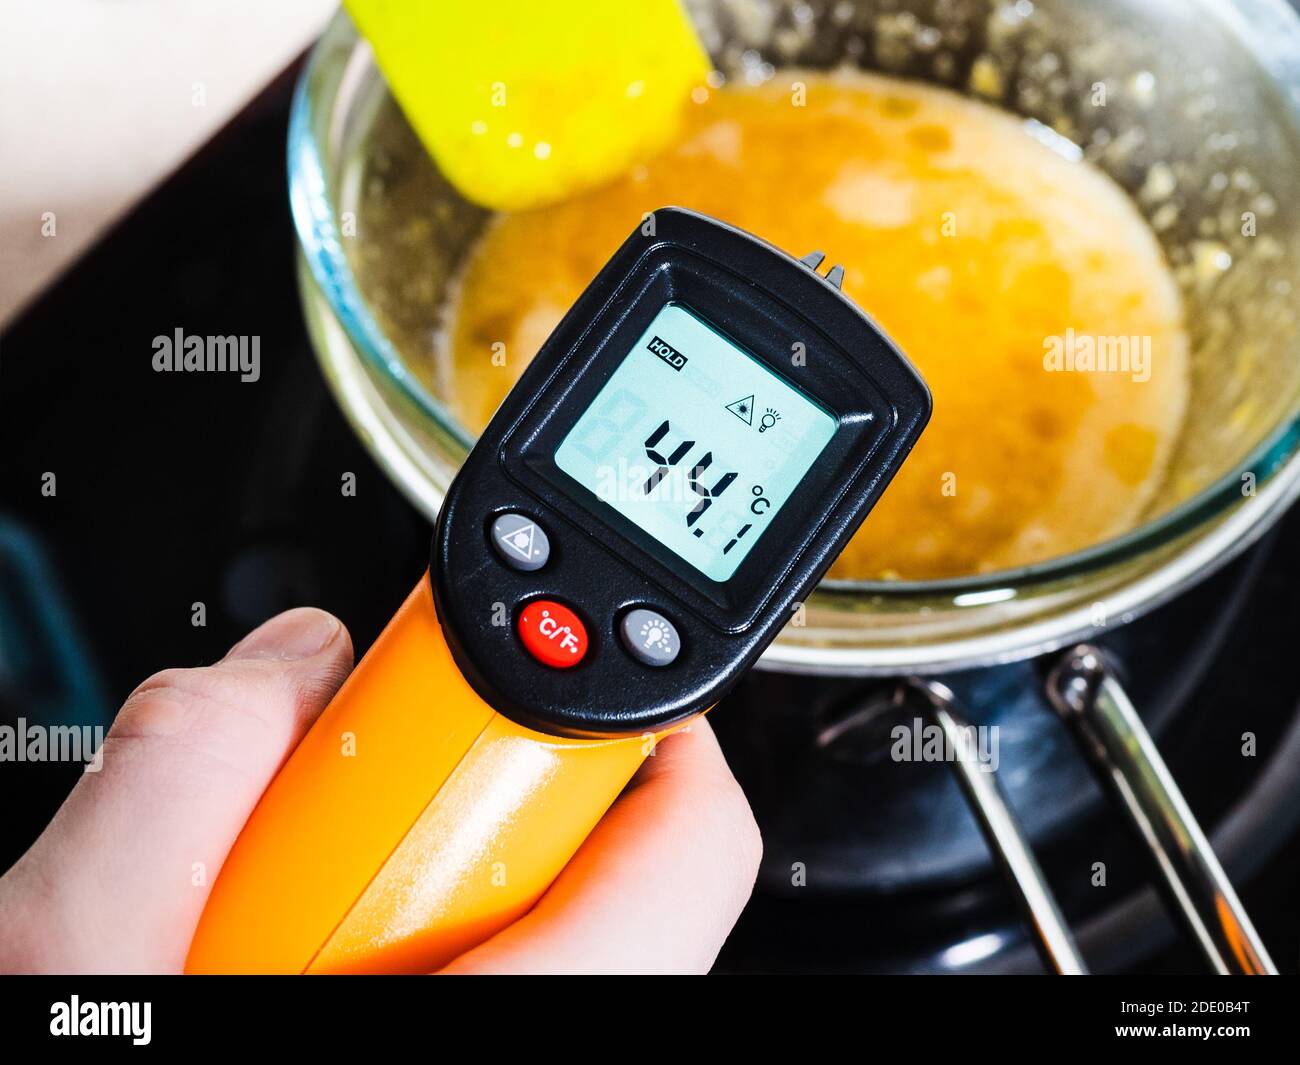 Kochen süßer Biskuitkuchen zu Hause - Messung der Temperatur von  Lebensmittel in Glasschale auf Wasserbad mit Infrarot-Thermometer Auf Herd  in der heimischen Küche Stockfotografie - Alamy